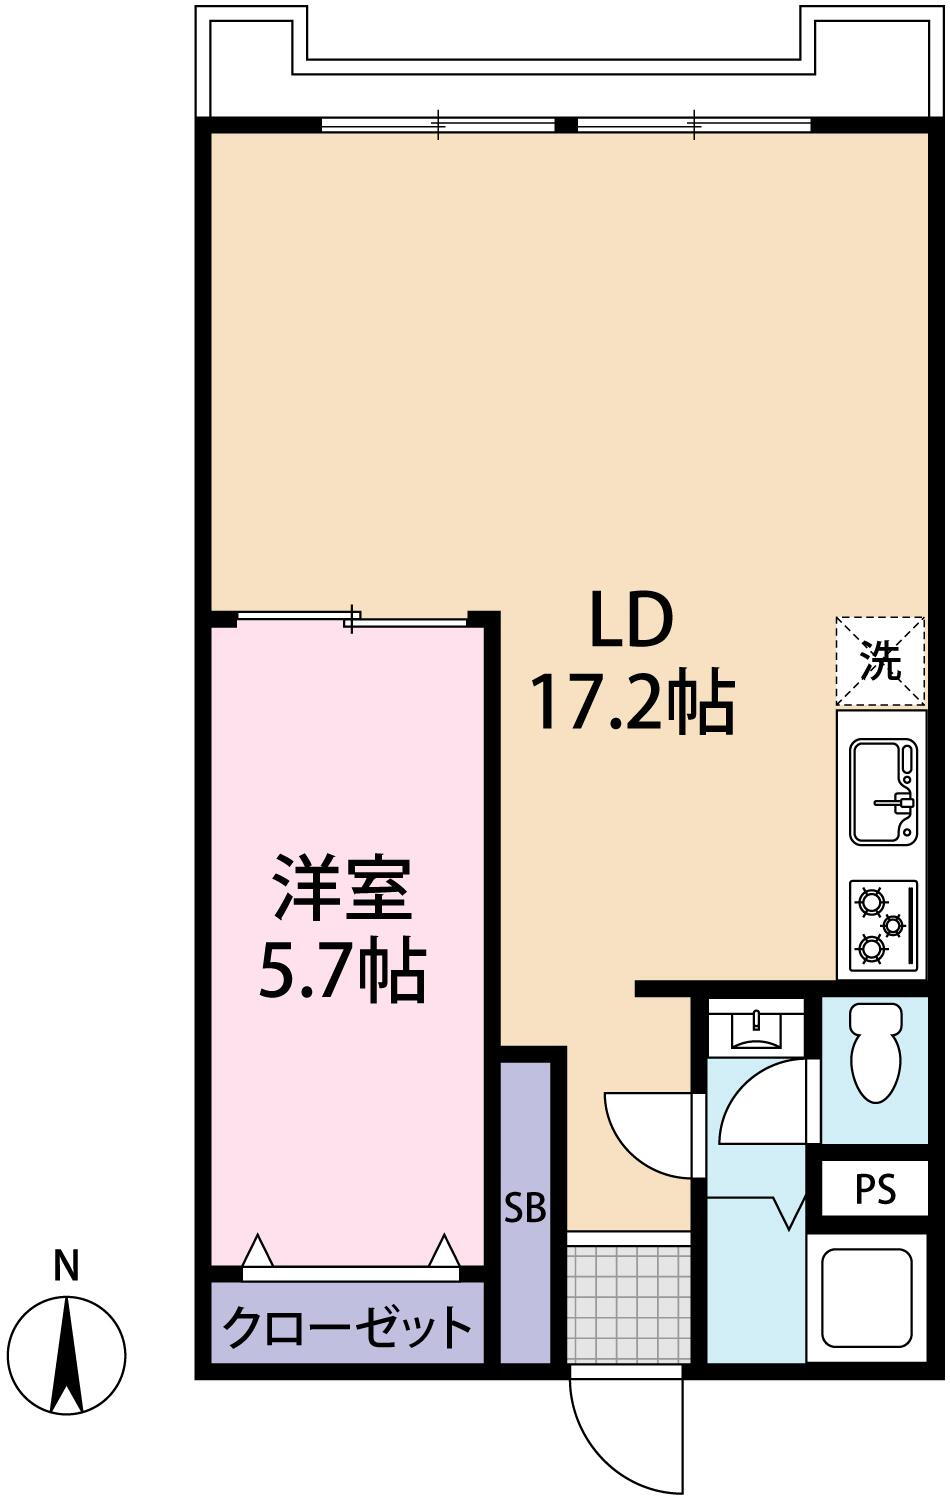 グリーンハイツ六甲 1LDK、価格1480万円、専有面積46.46m<sup>2</sup> 